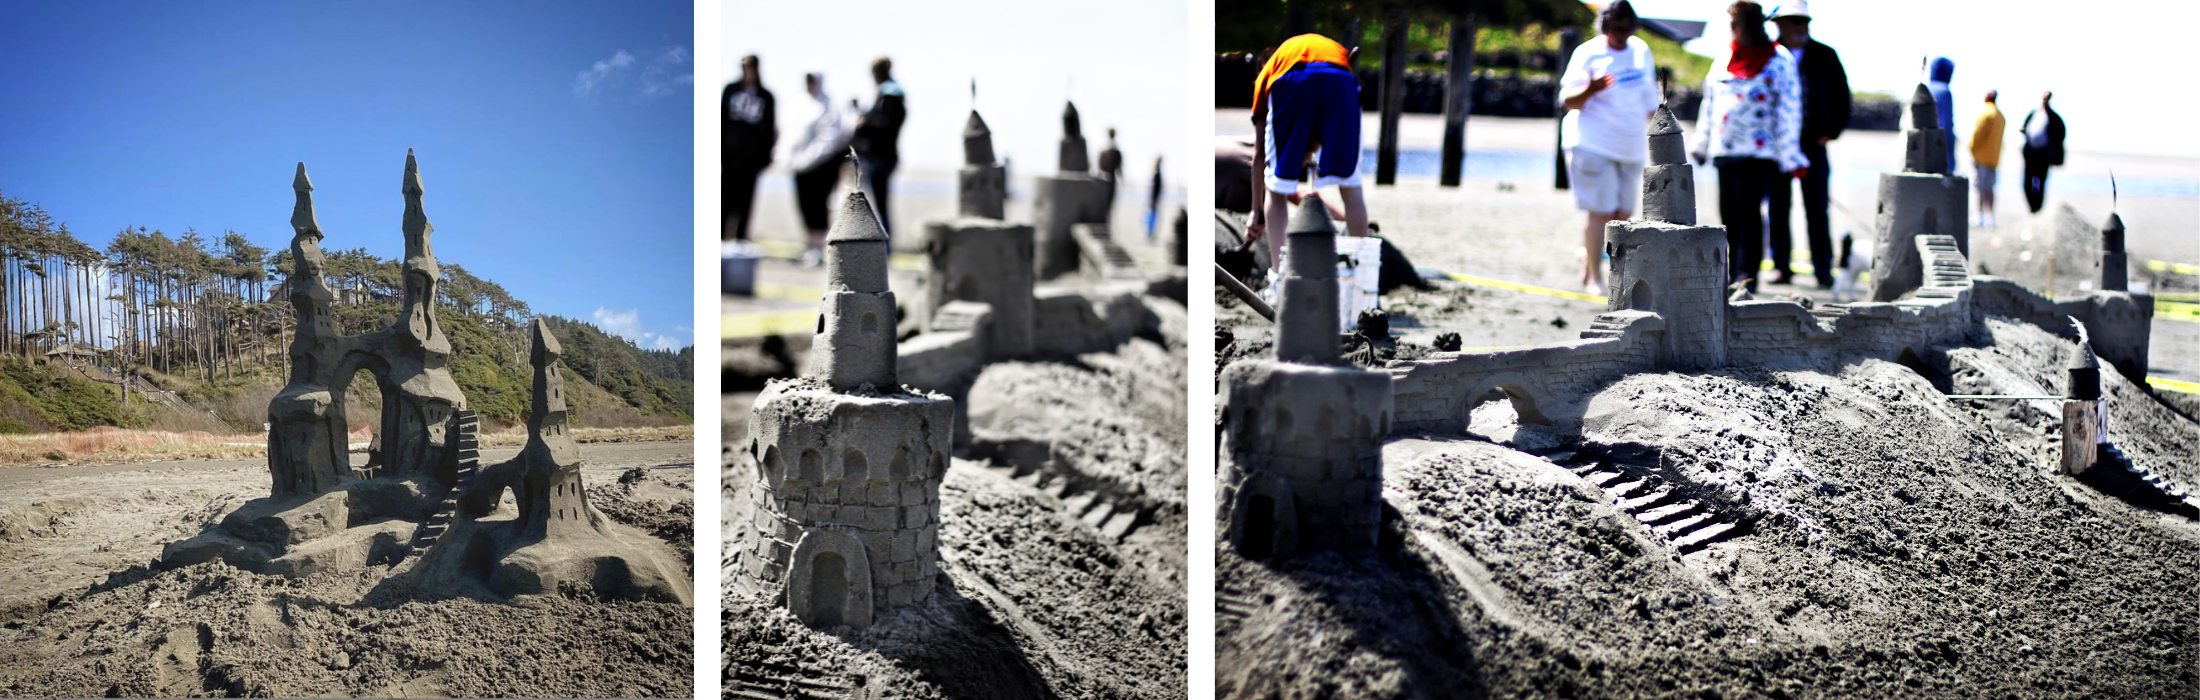 Build Sandcastles In Seabrook